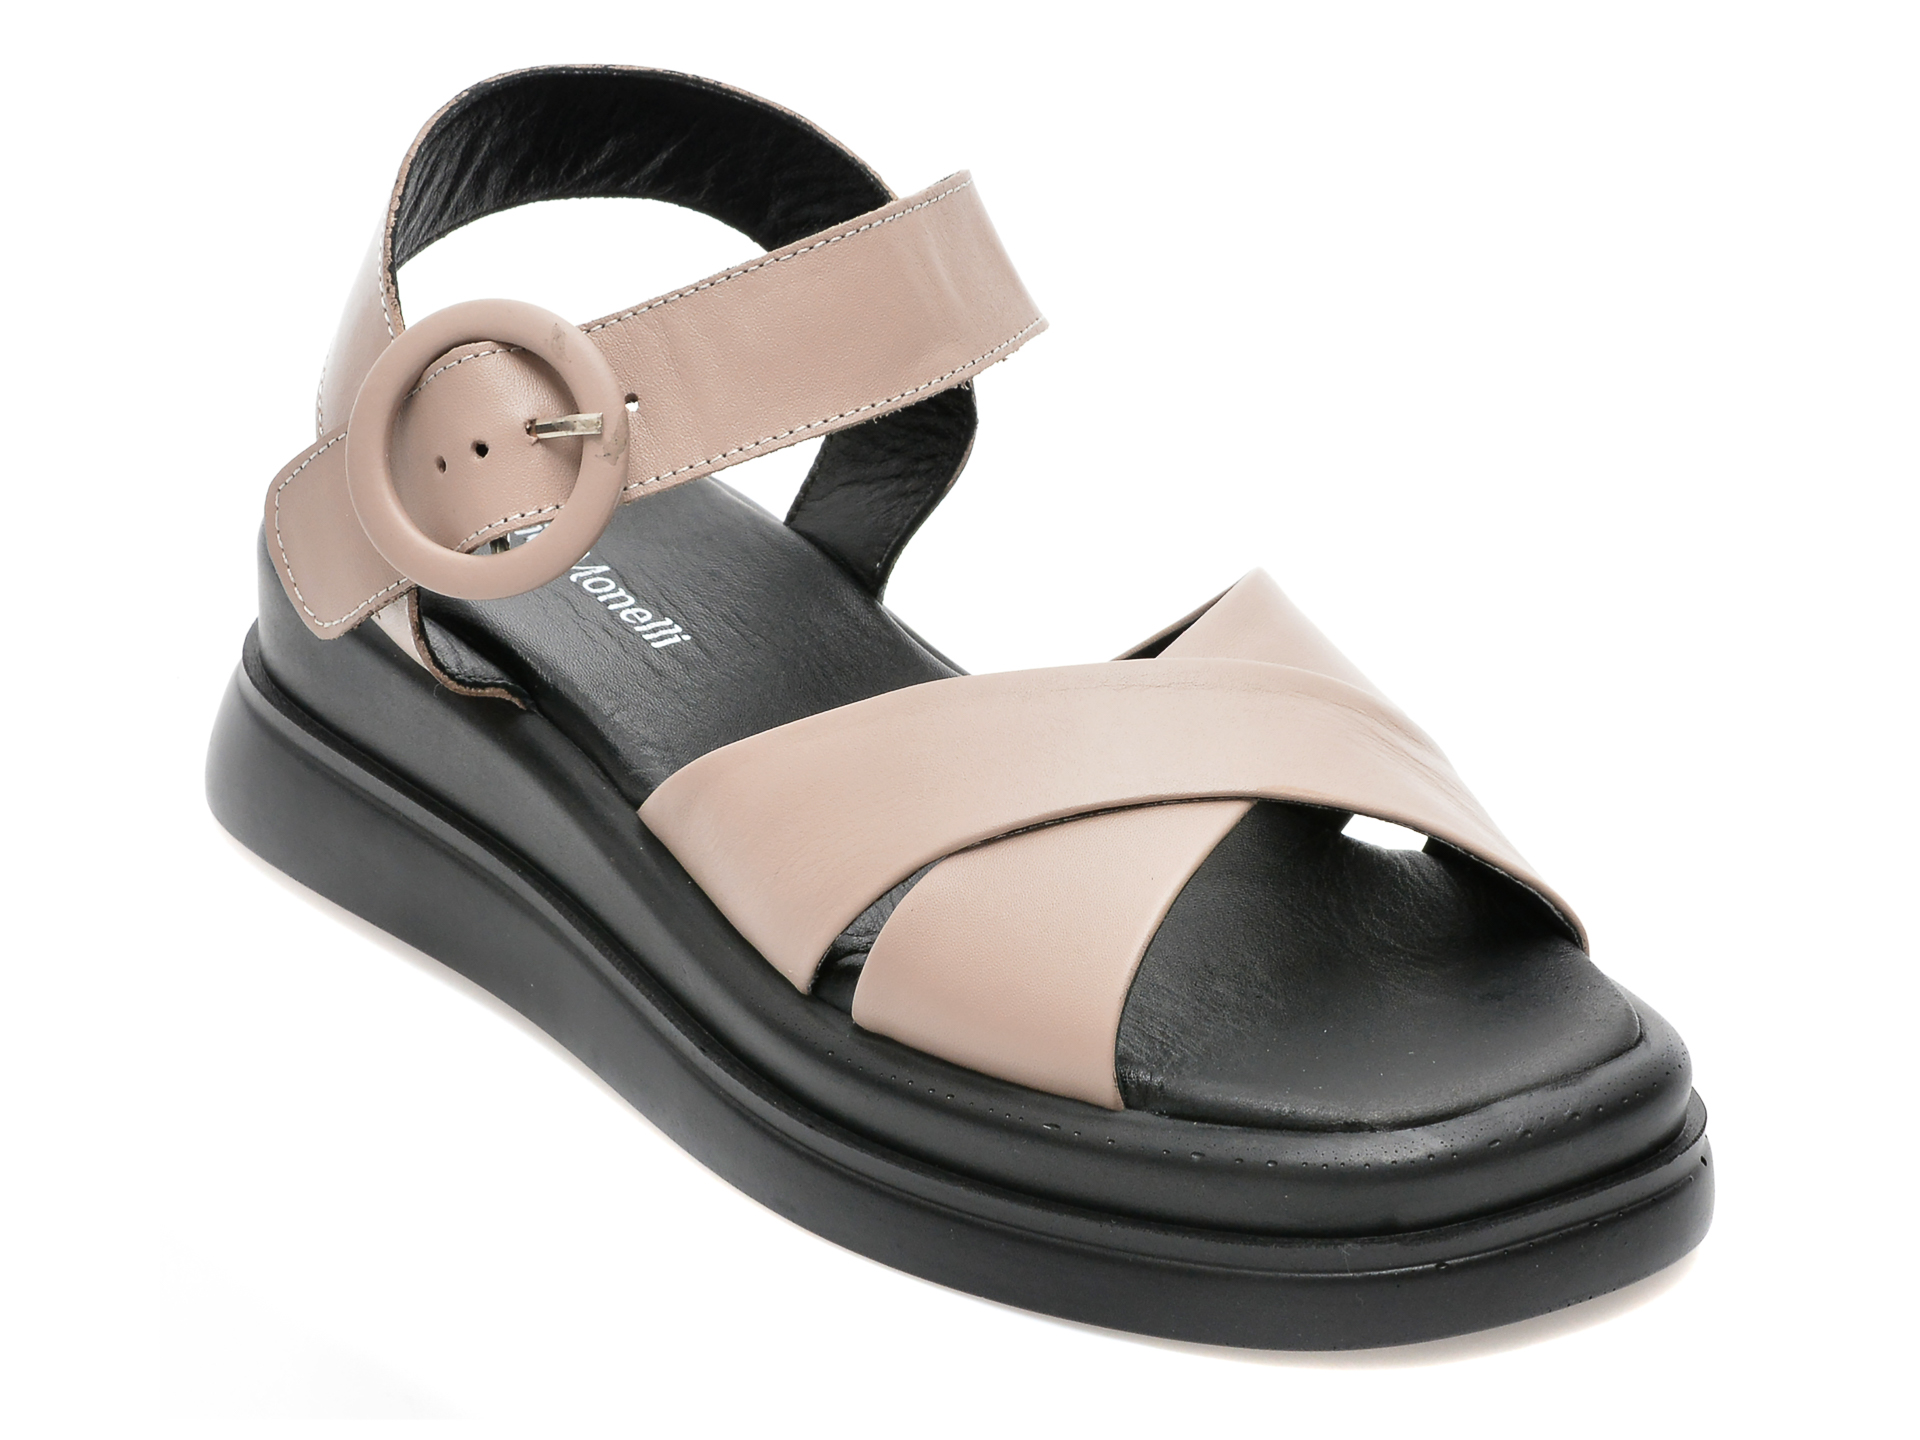 Sandale FABIO MONELLI gri, 739, din piele naturala /femei/sandale